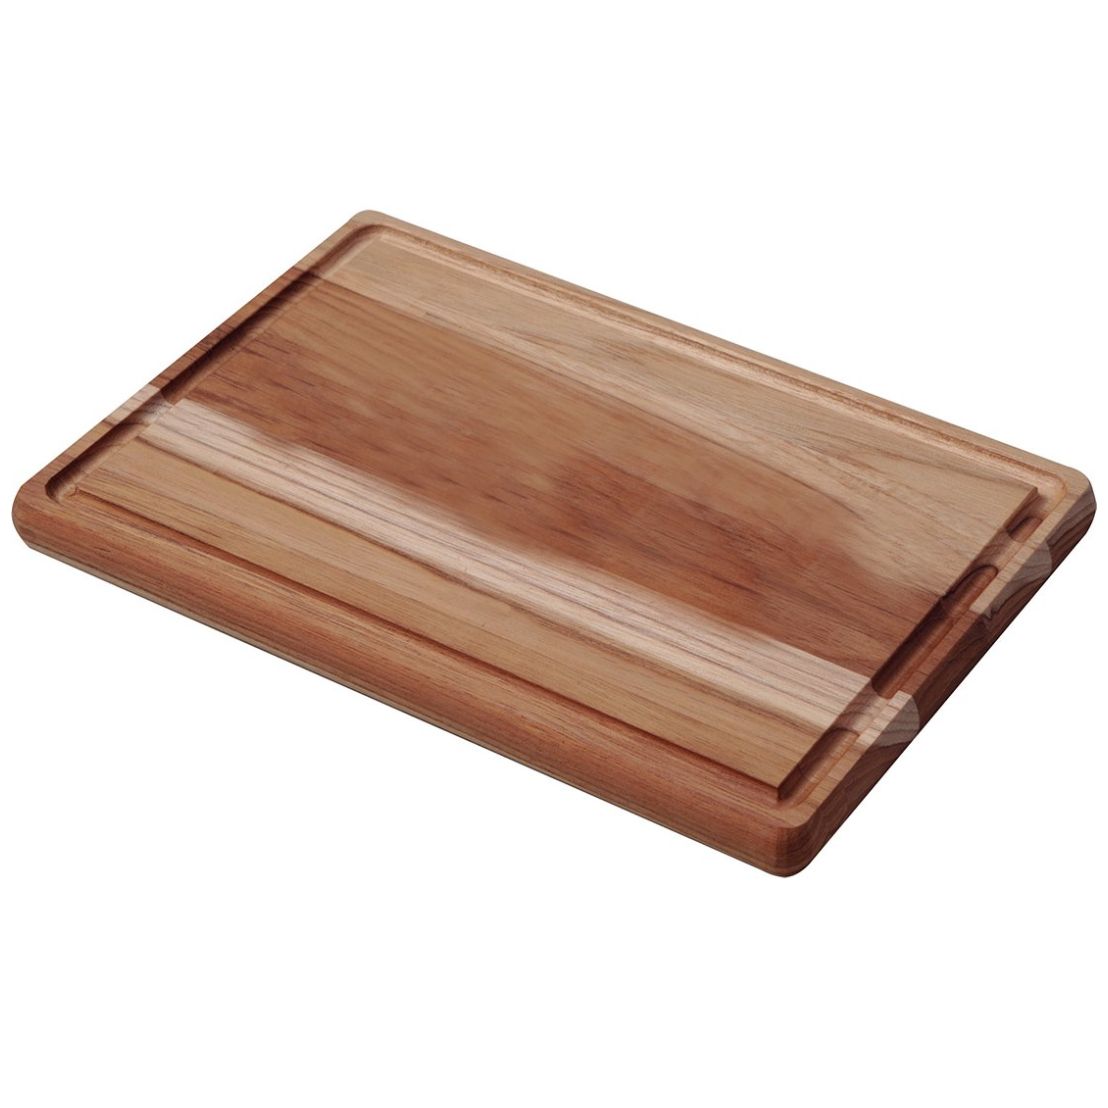 Tablas de madera para Picar - Asado - Cocina